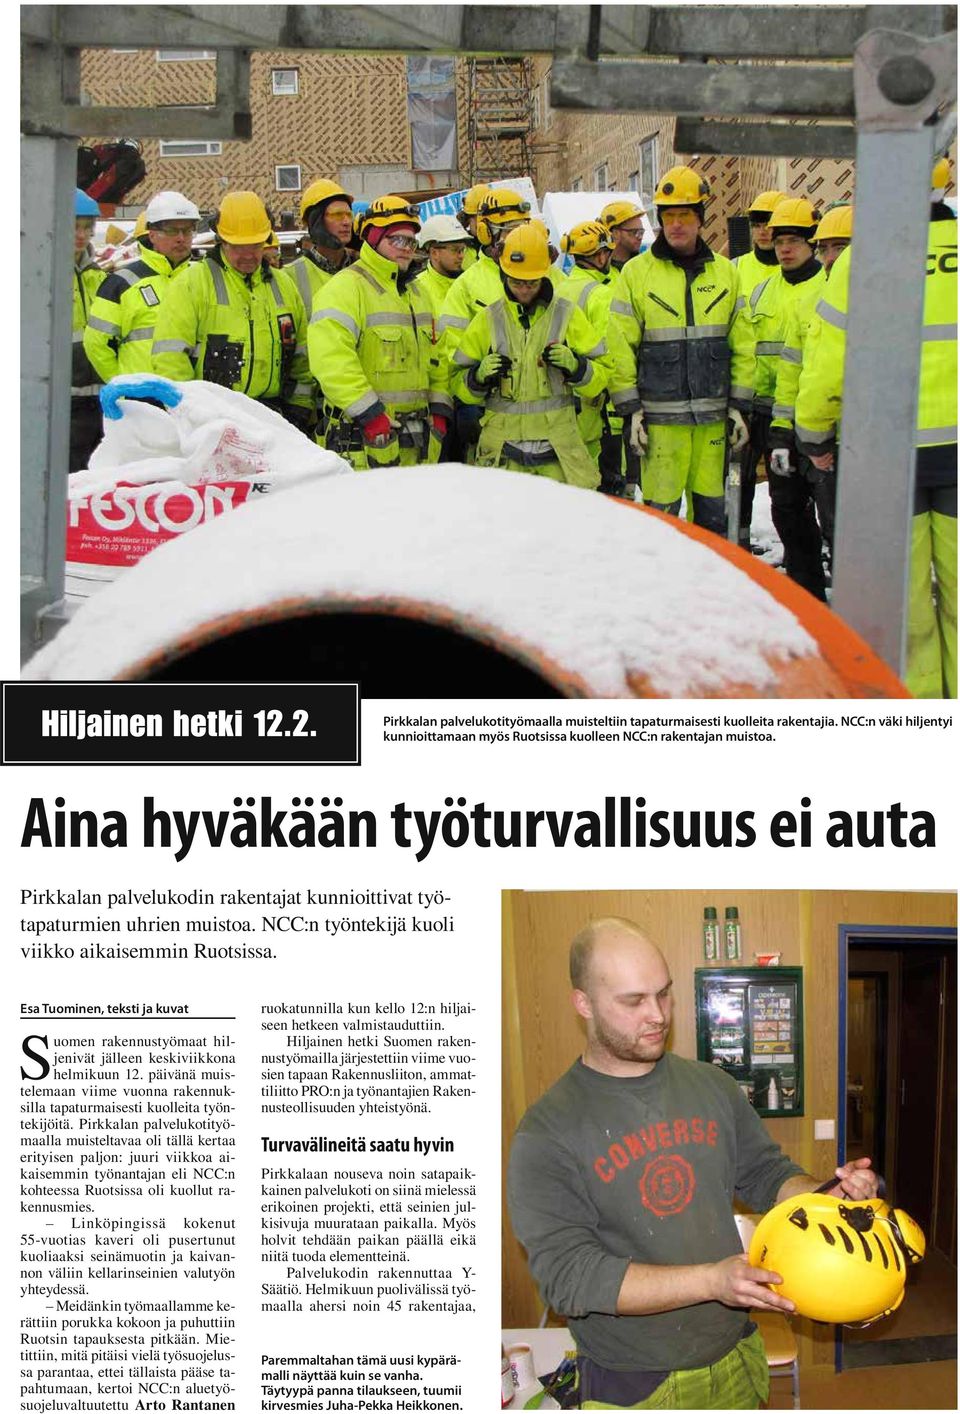 Esa Tuominen, teksti ja kuvat Suomen rakennustyömaat hiljenivät jälleen keskiviikkona helmikuun 12. päivänä muistelemaan viime vuonna rakennuksilla tapaturmaisesti kuolleita työntekijöitä.